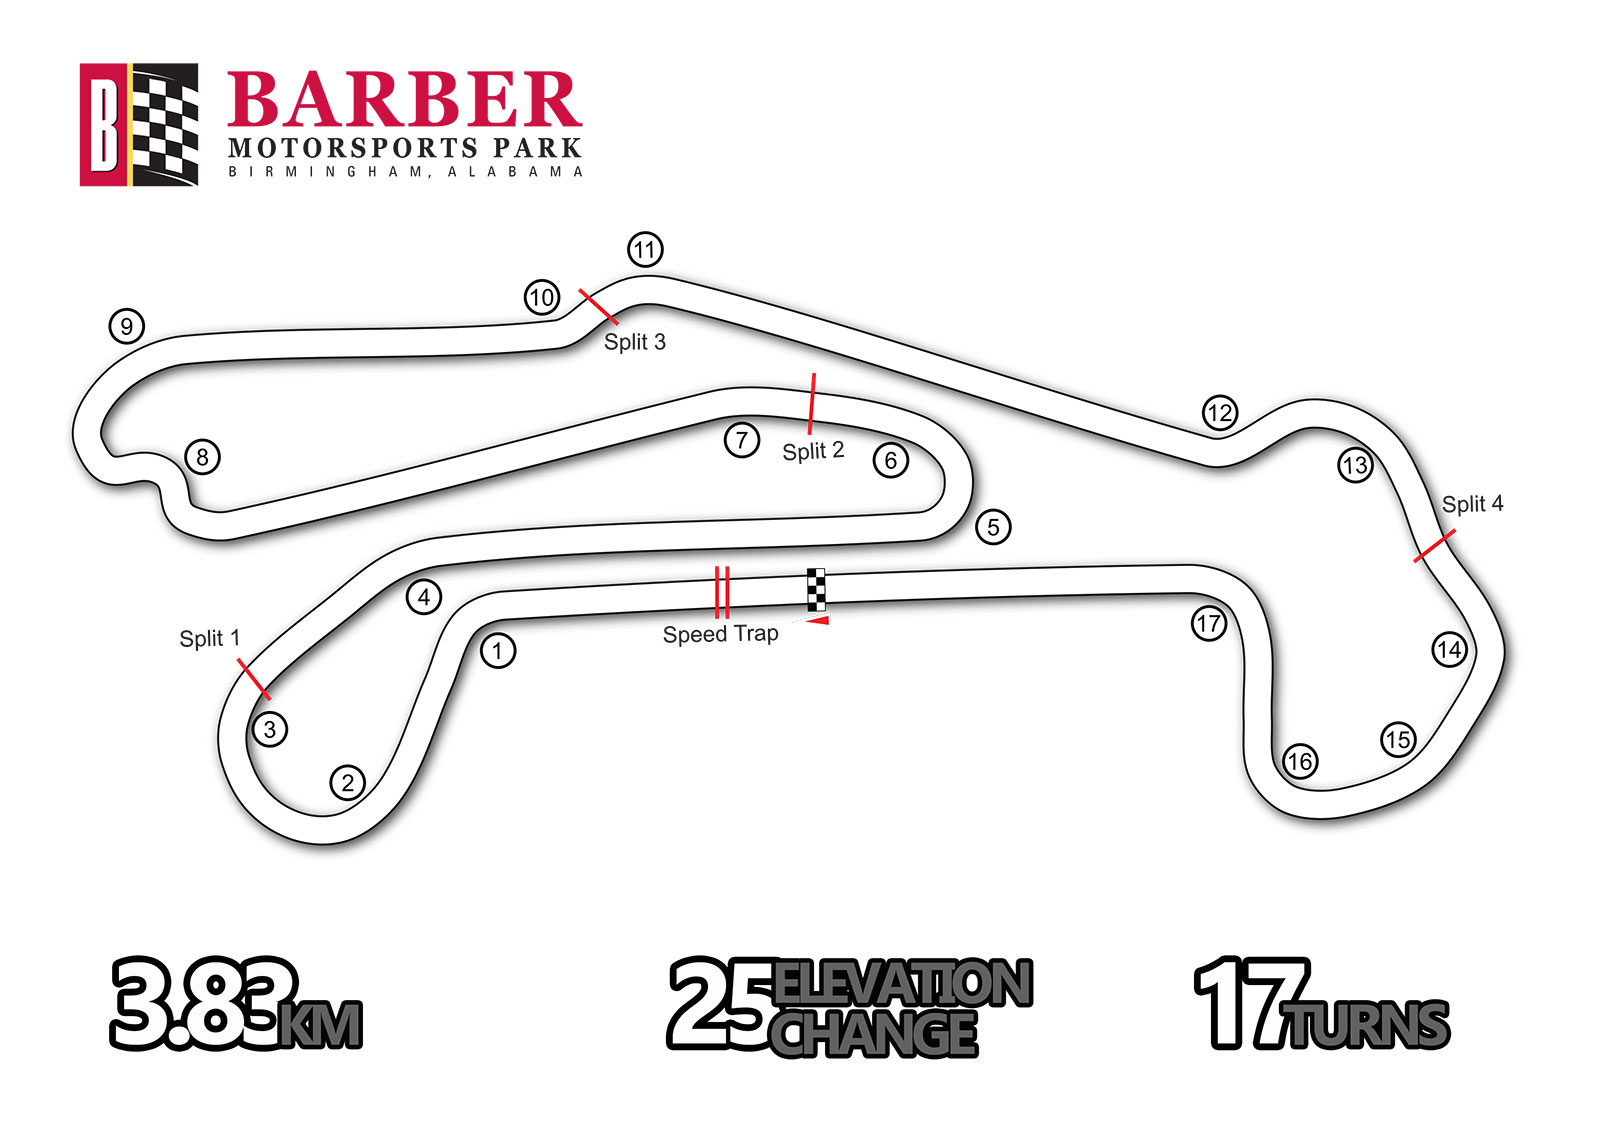 Barber-Motorsports-Park.jpg